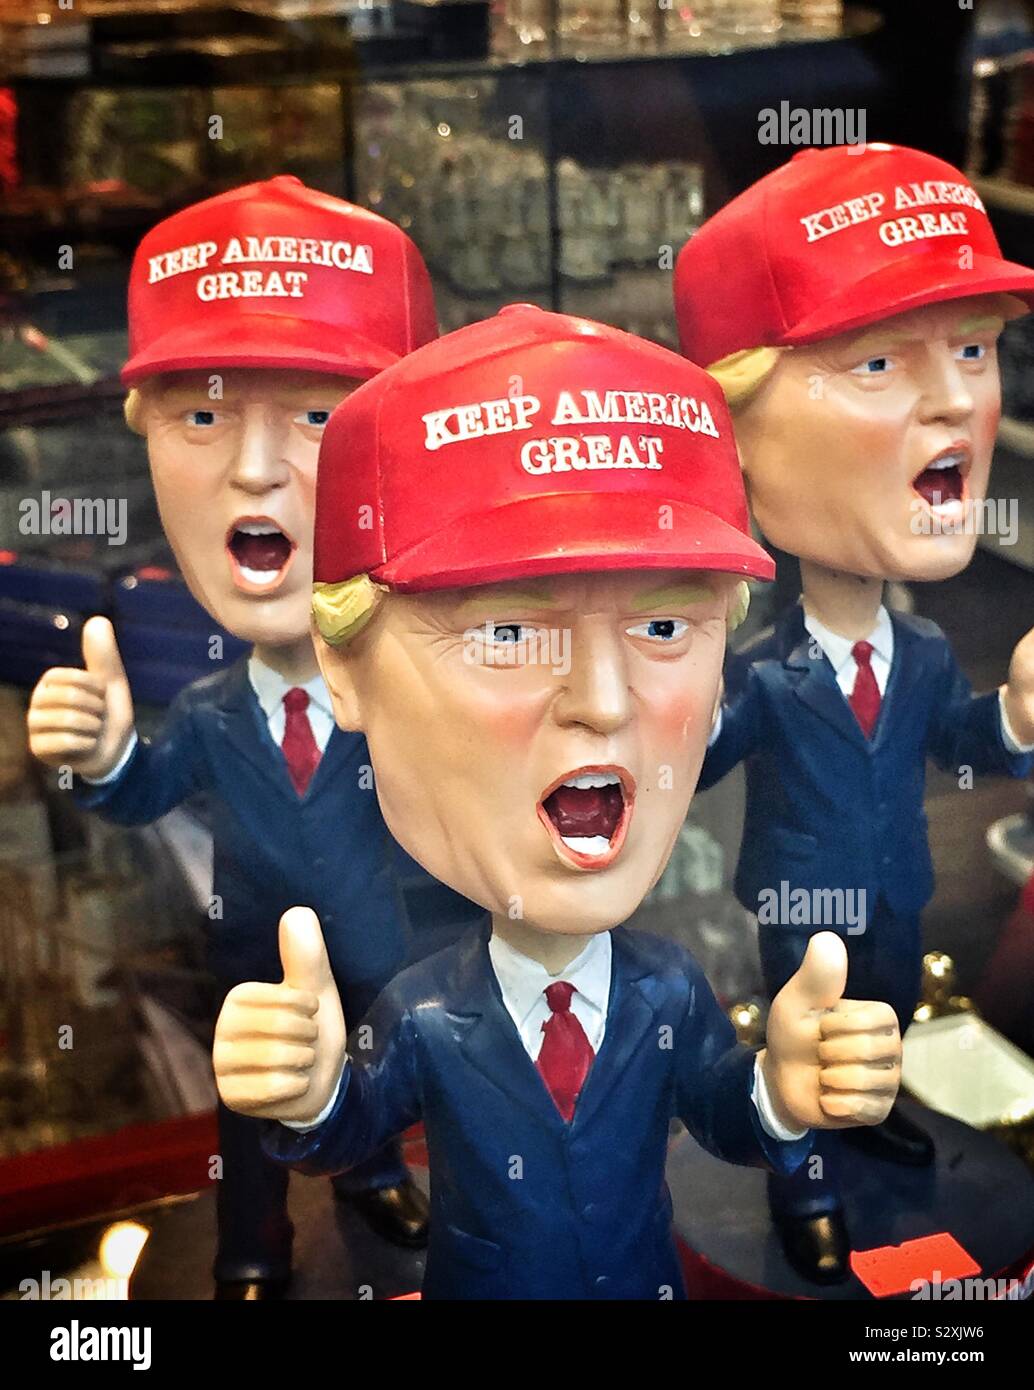 L'atout de Donald figurines avec son nouveau slogan de campagne "Keep America Great'. Banque D'Images